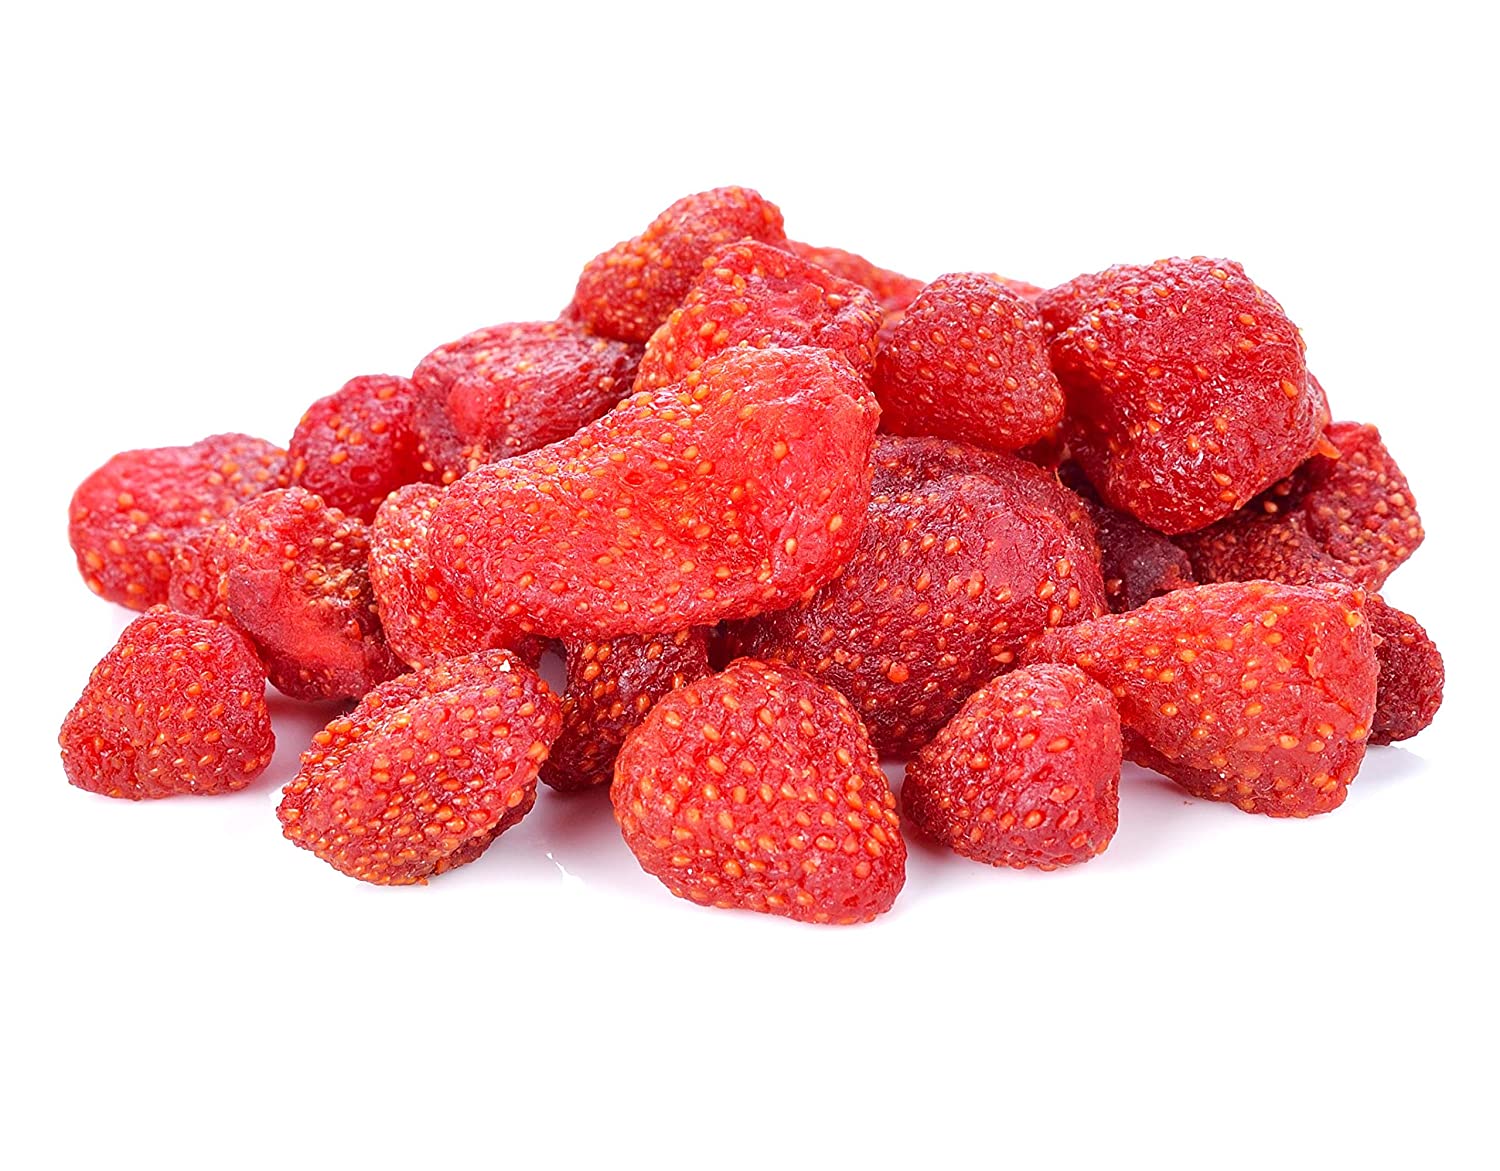 สตรอเบอรี่อบแห้ง (ถุง500กรัม) สะอาด เปรี้ยวหวาน อร่อย /สตอเบอรี่อบแห้ง ผลไม้อบแห้ง /Dried Strawberries -500gram bag